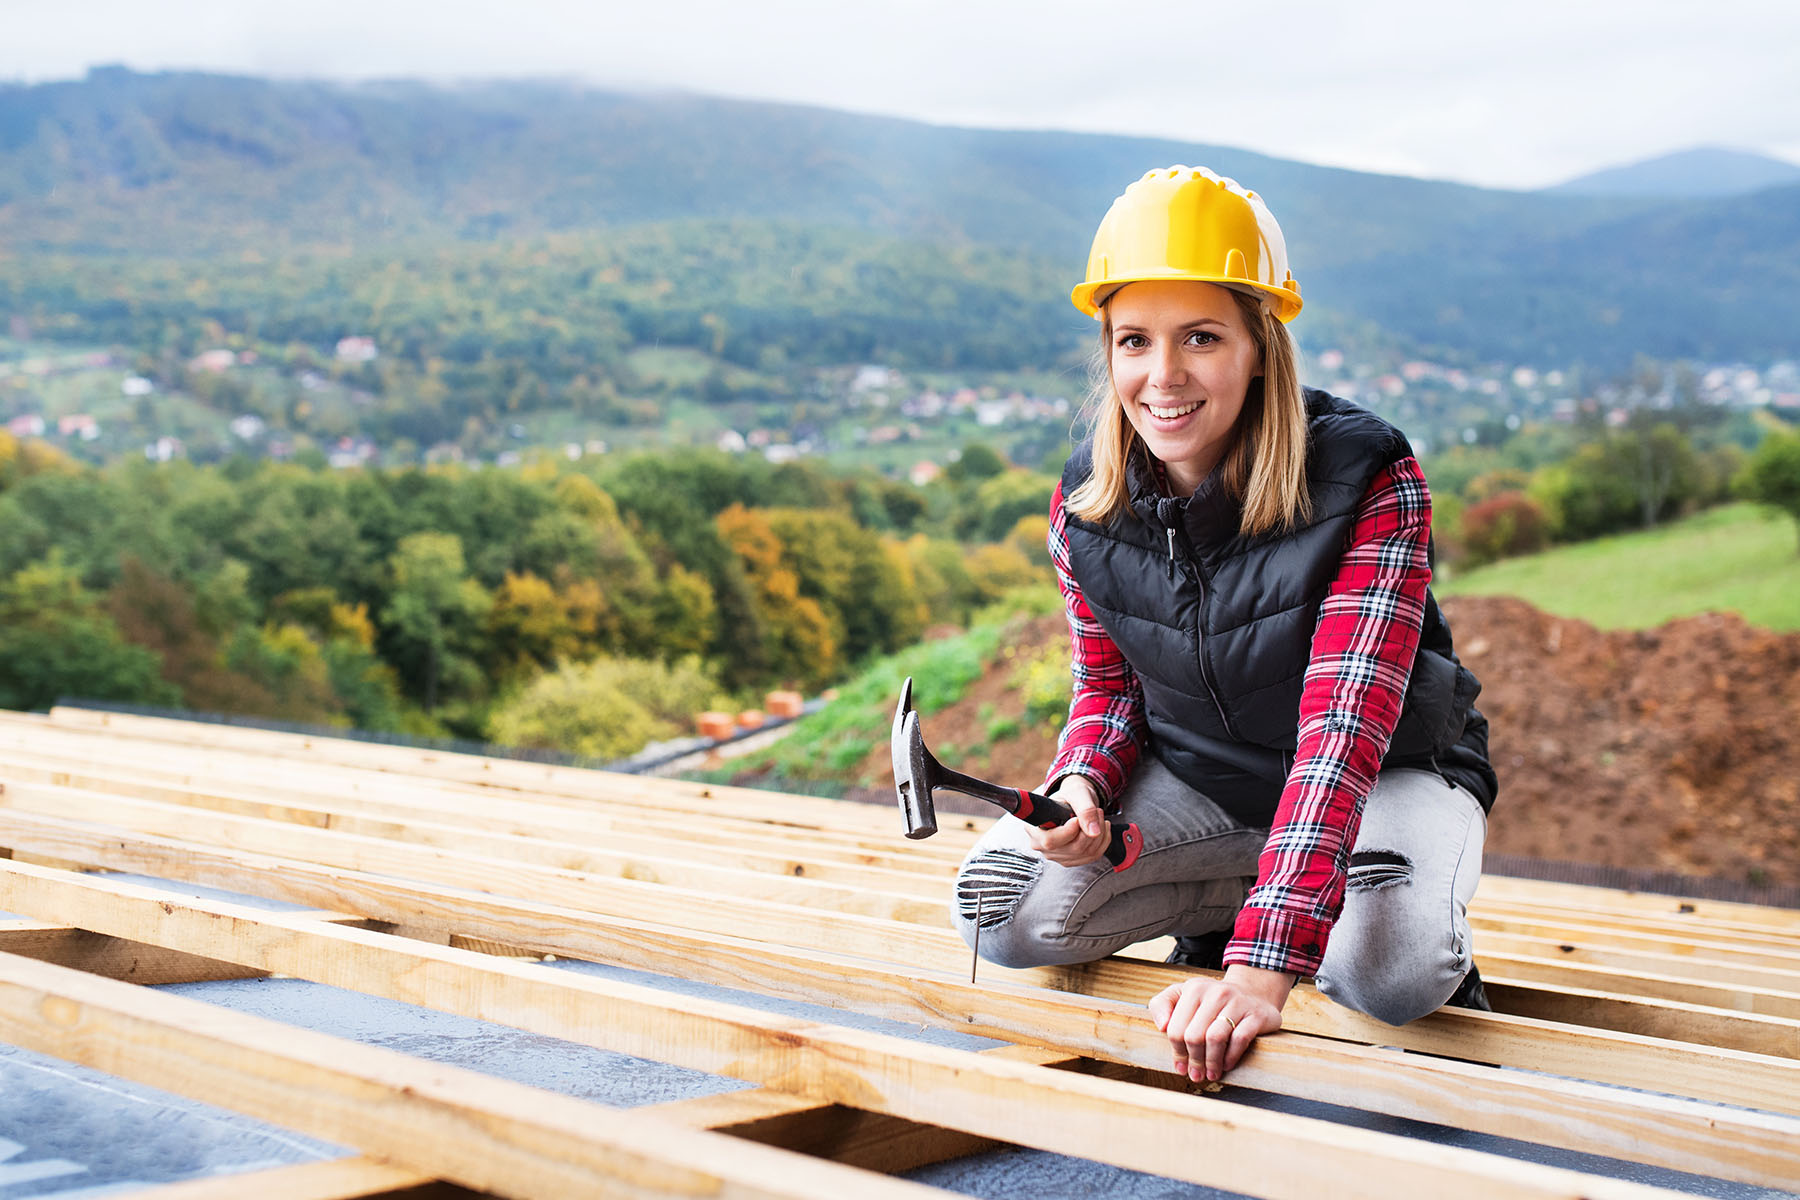 Eine junge Frau kniet auf einer Dachkonstruktion. In der rechten Hand hält sie einen Hammer.